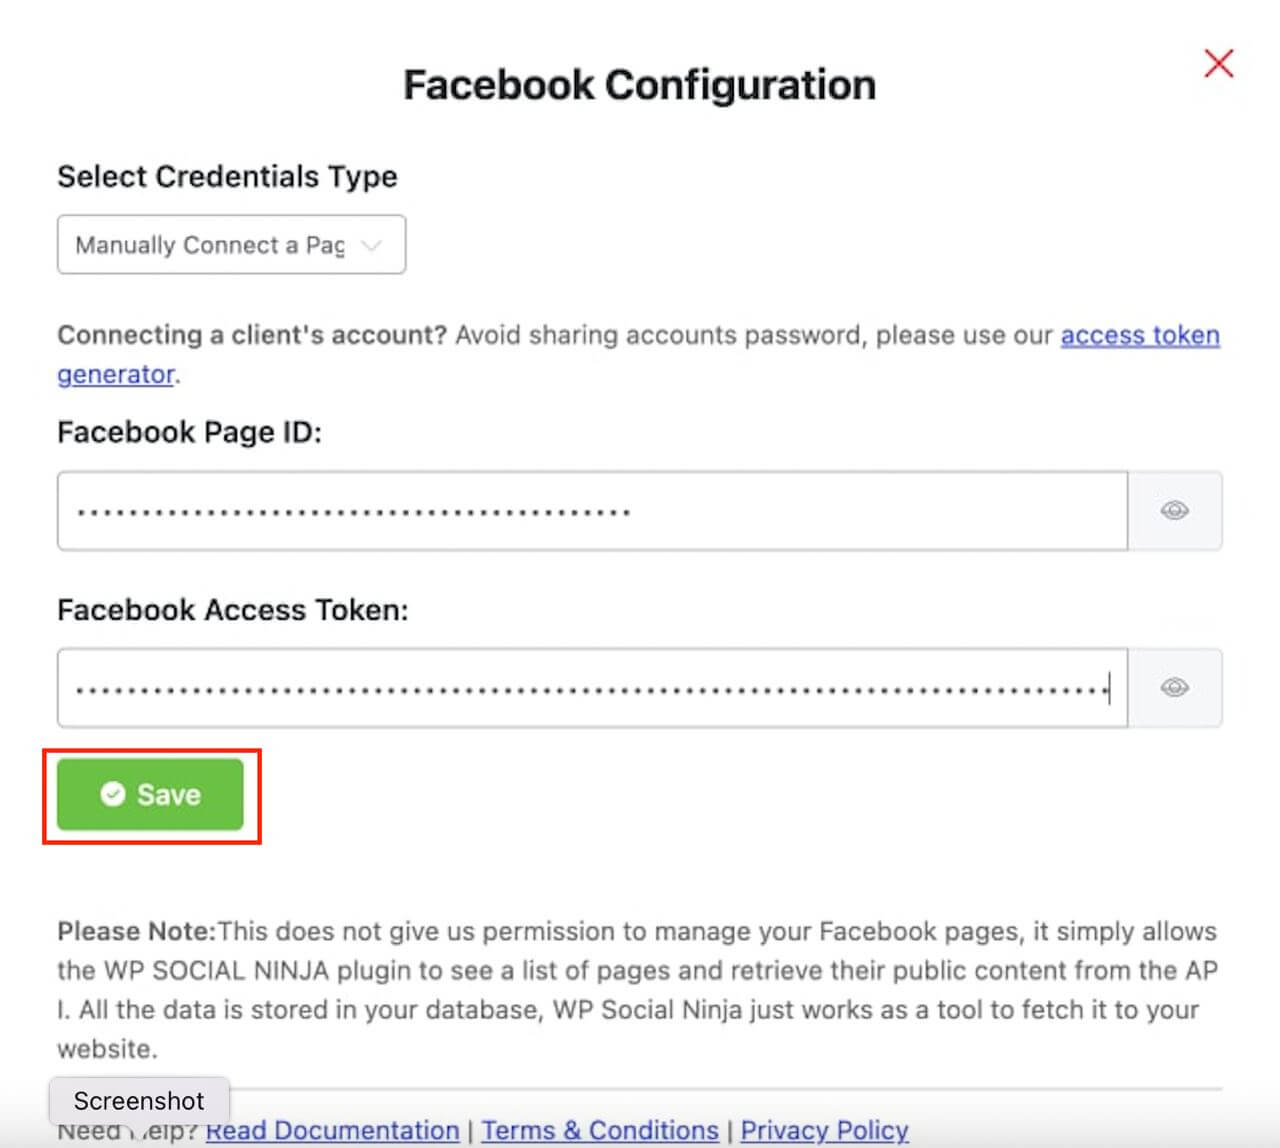 Enter the Facebook Page ID & Facebook Access Token